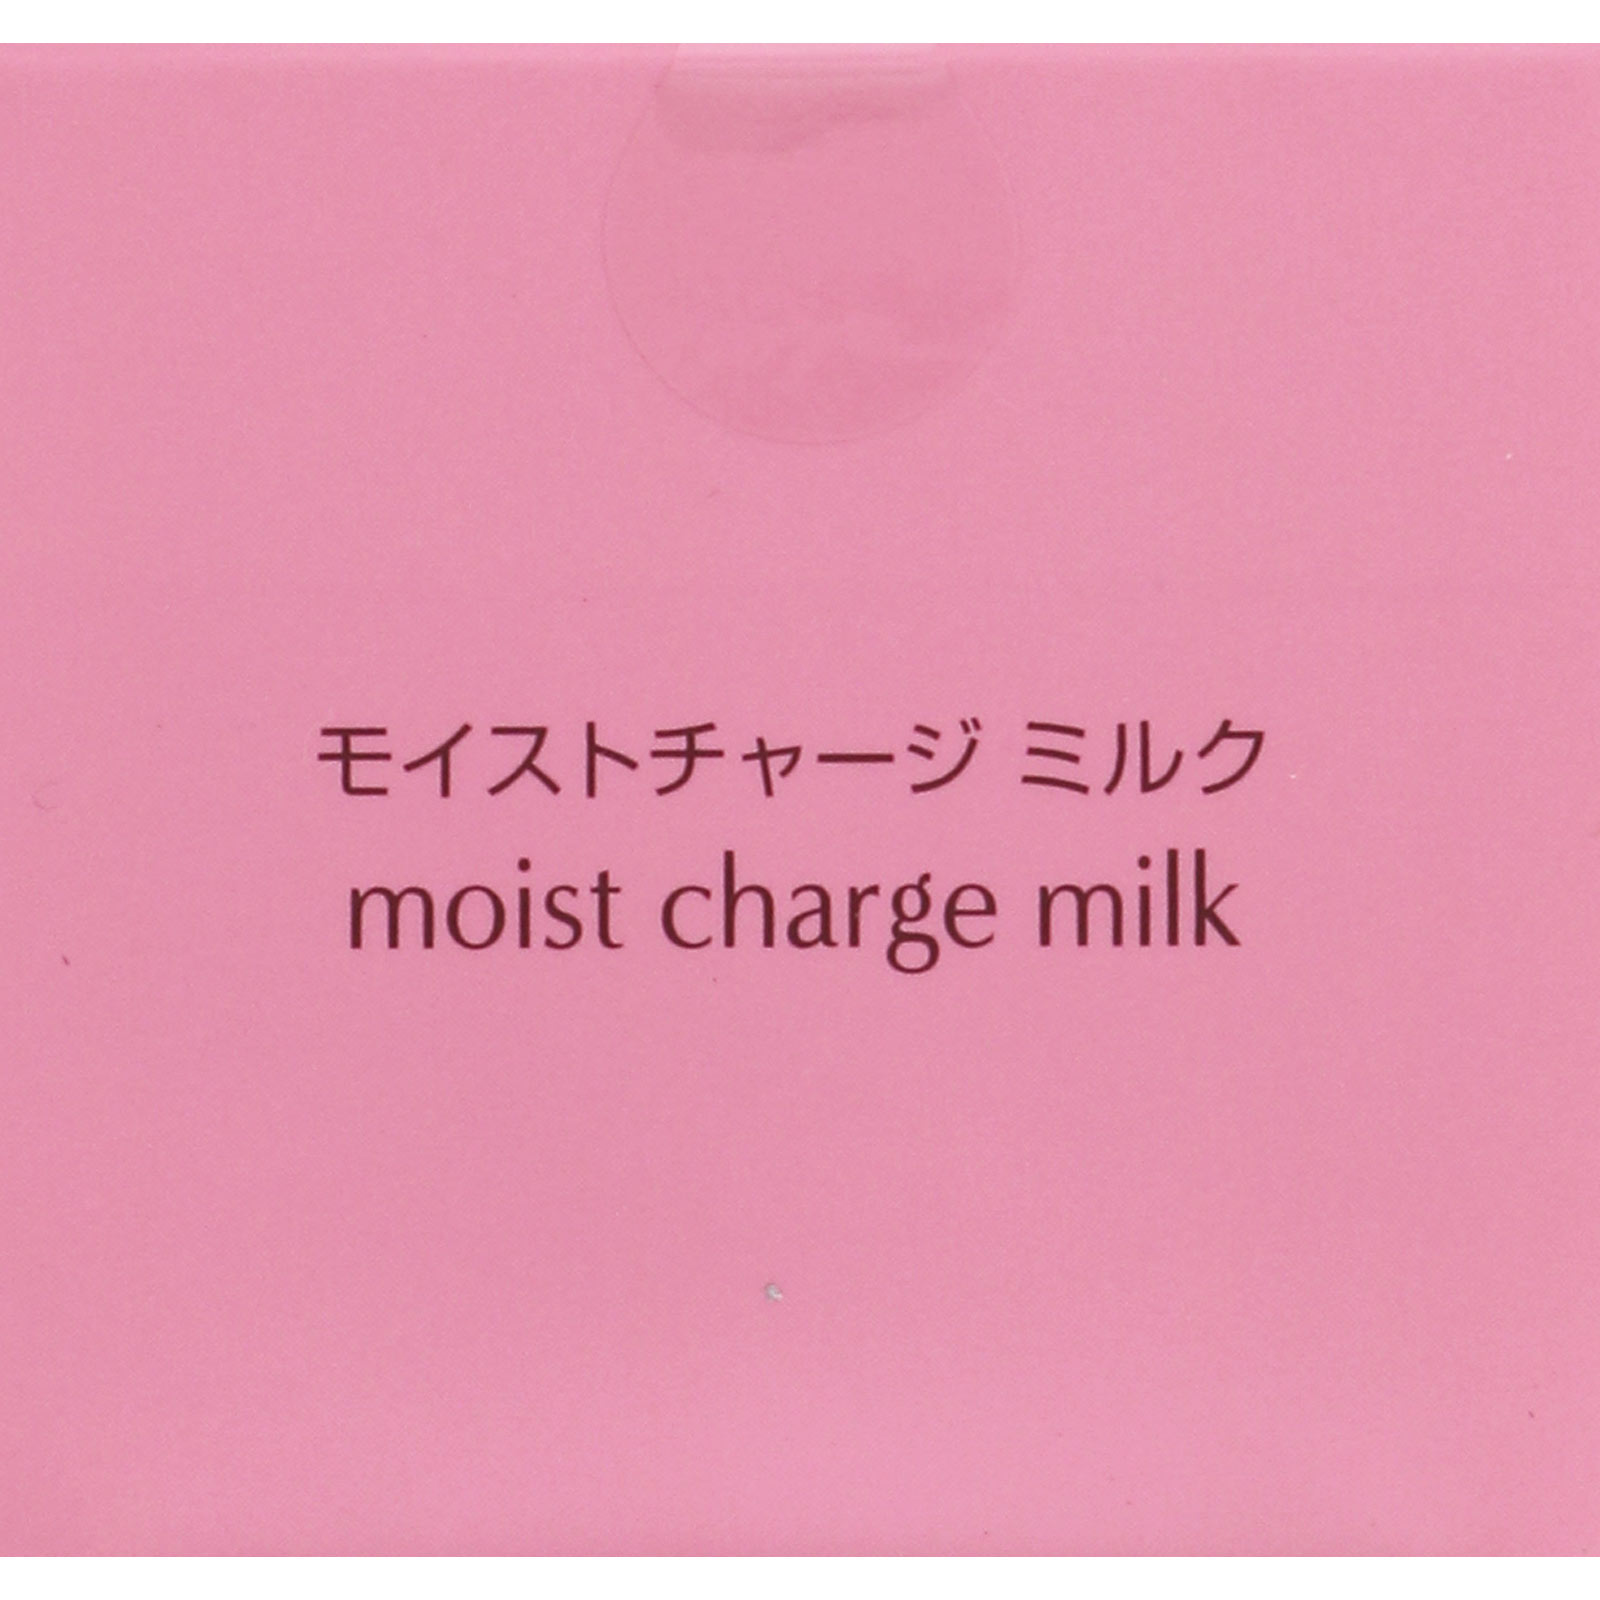 ミノン アミノモイスト モイストチャージミルク | マツキヨココカラ